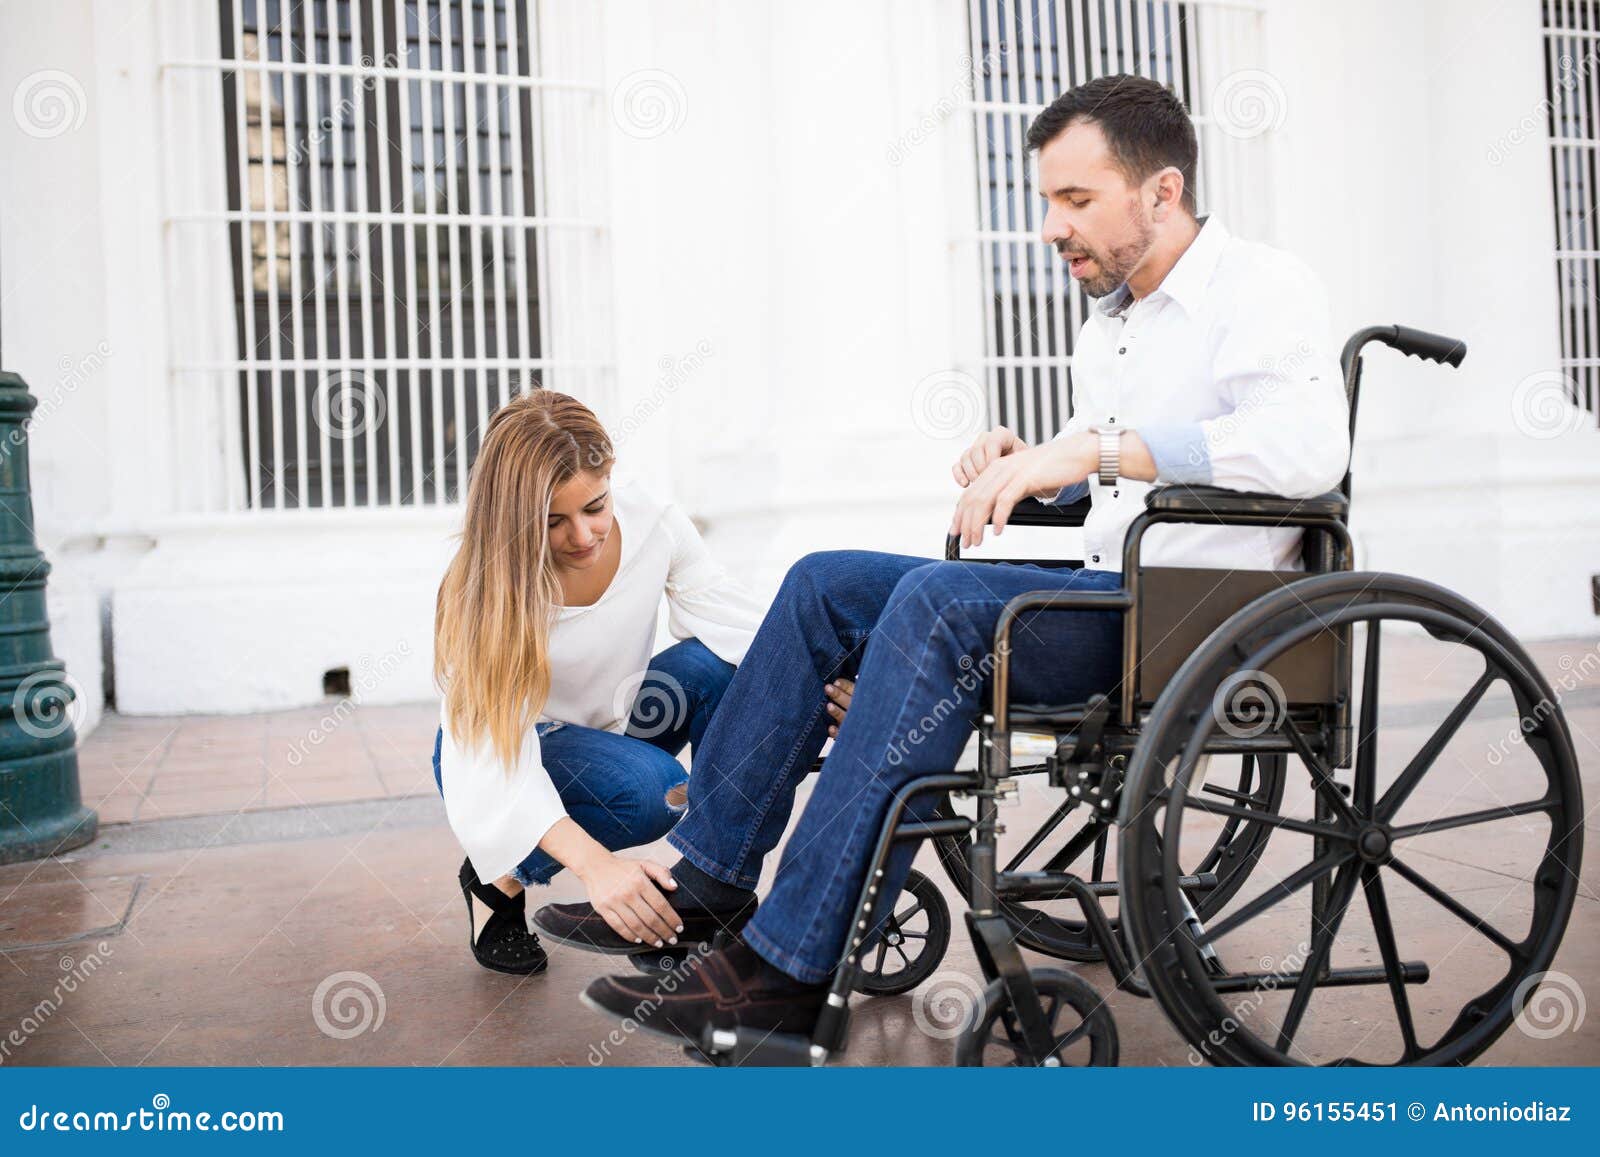 Муж инвалид любовник. Парень в инвалидном кресле. Кресло для инвалидов. Мужчина в инвалидной коляске. Девушка в инвалидной коляске.